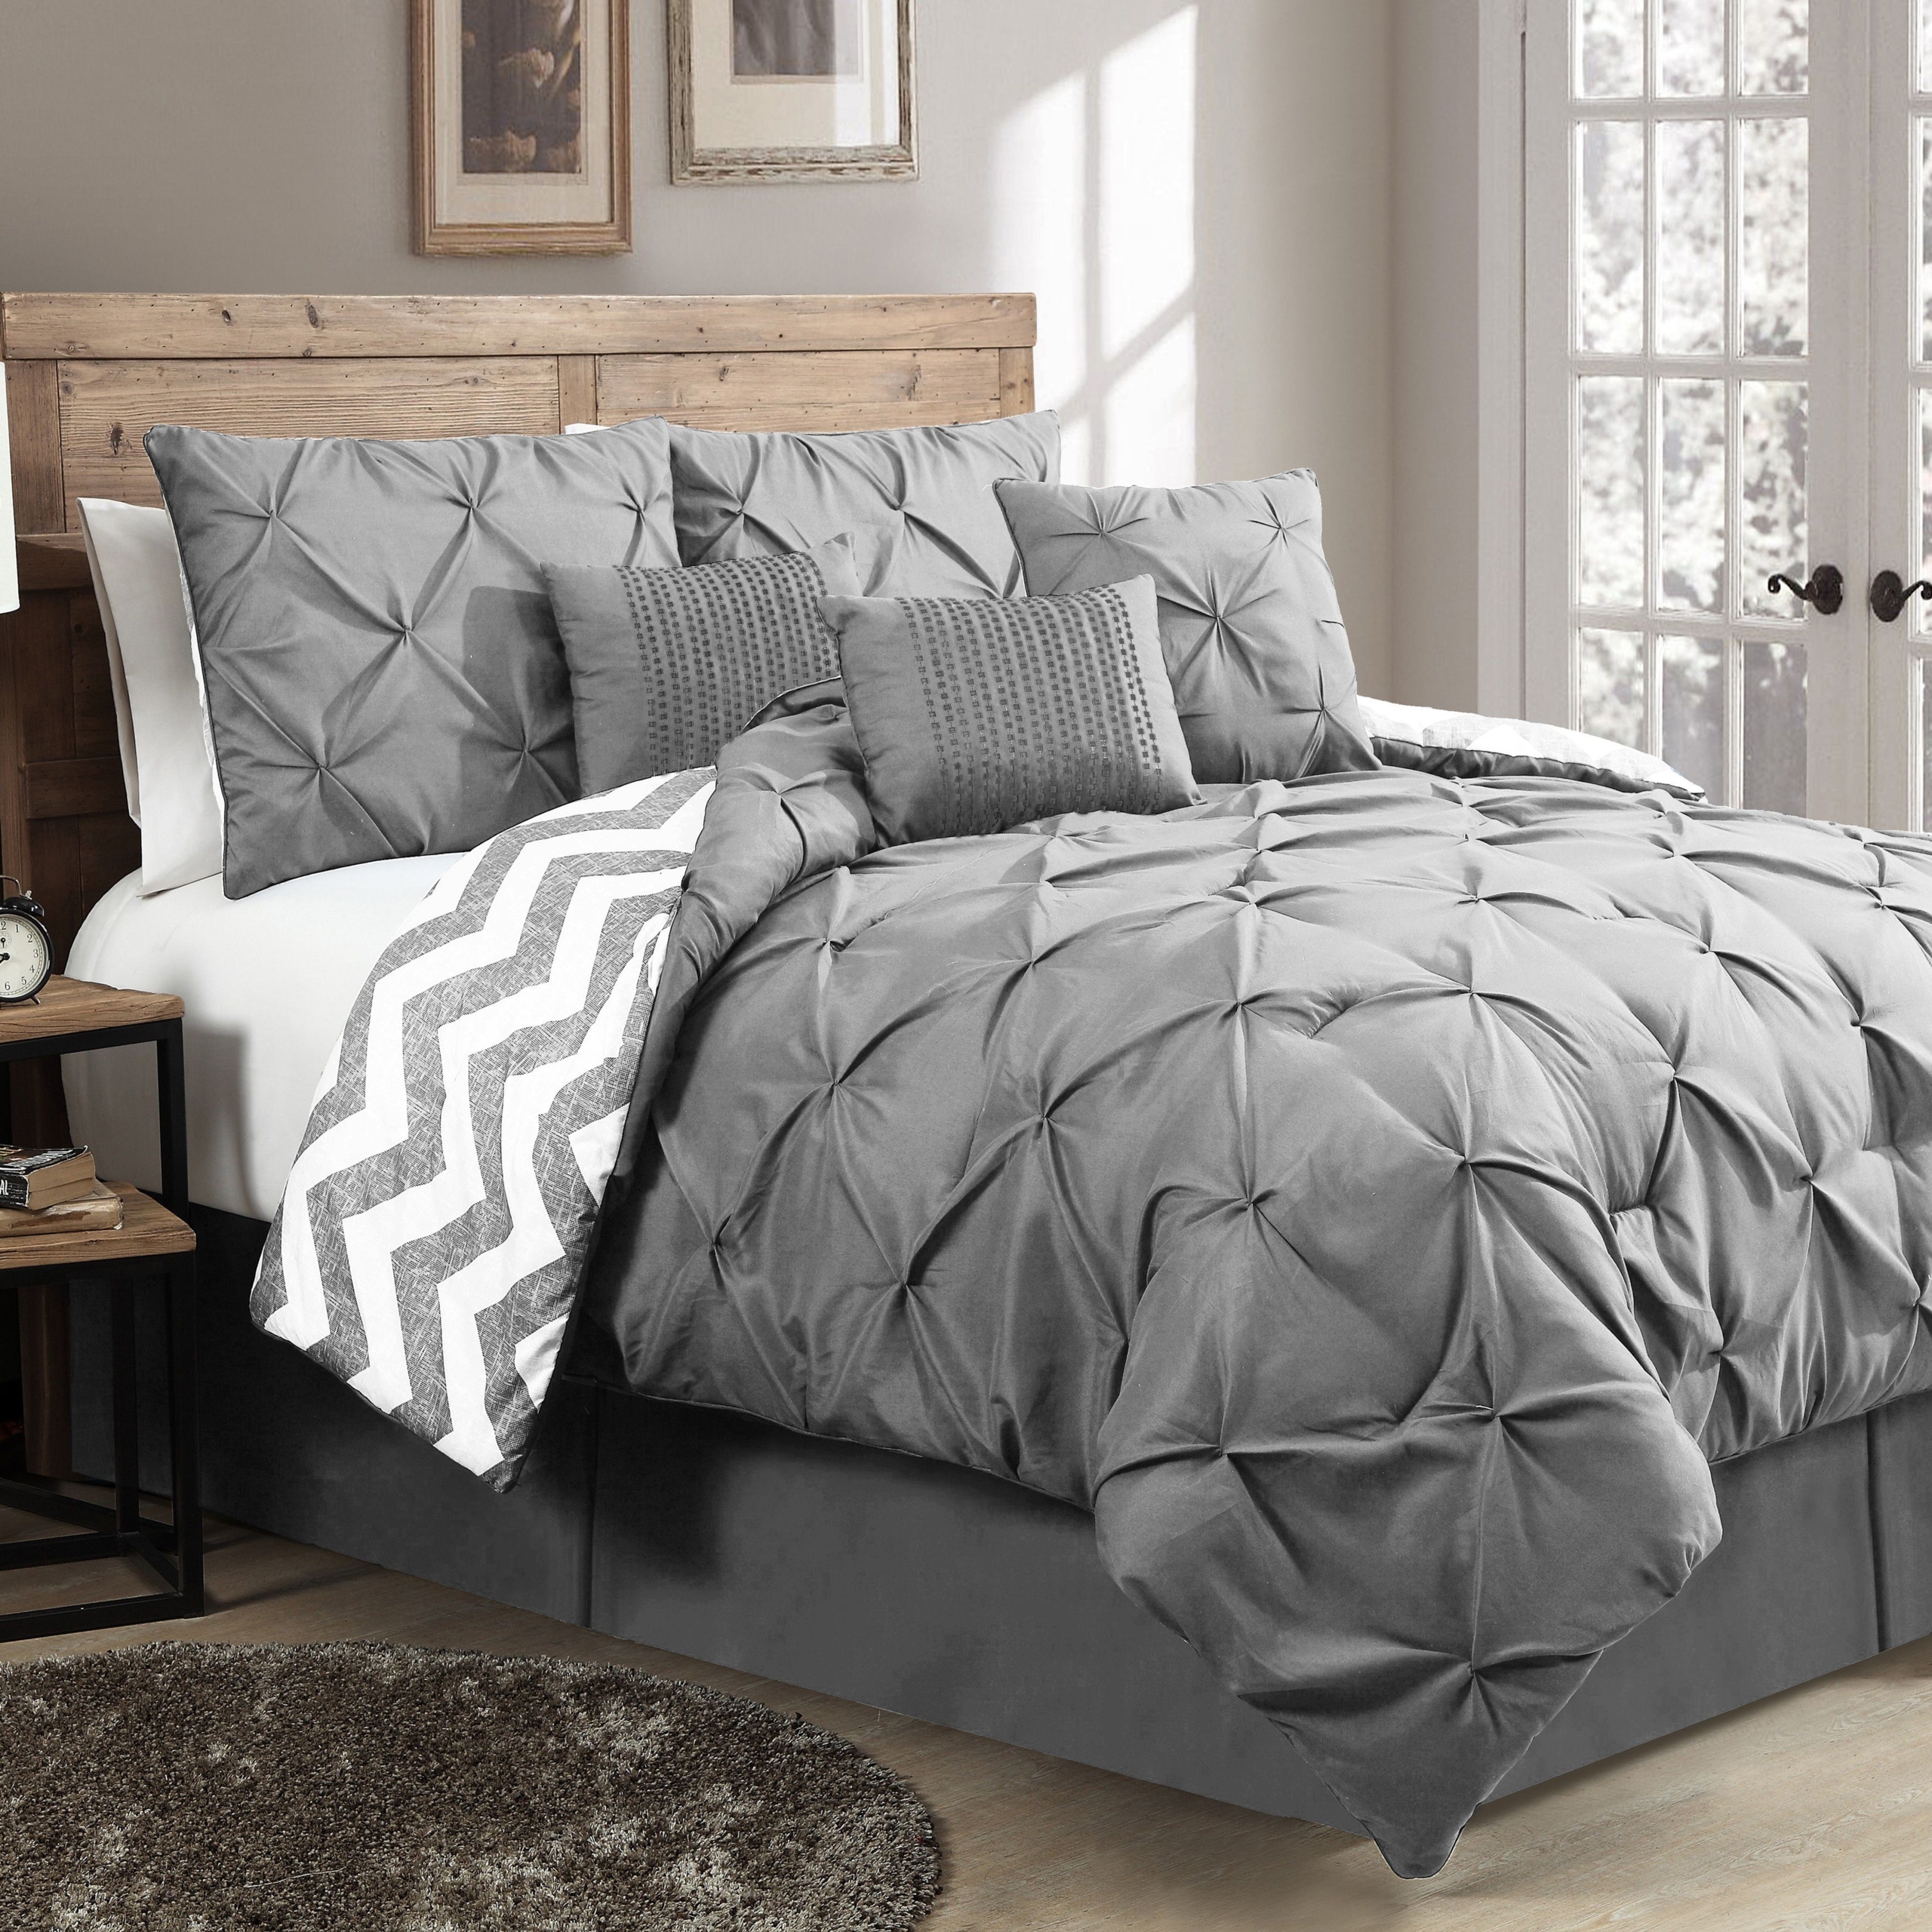 Beautiful Reversable Grey 7 Pc Modern Chevron Textured Comforter Set Queen King